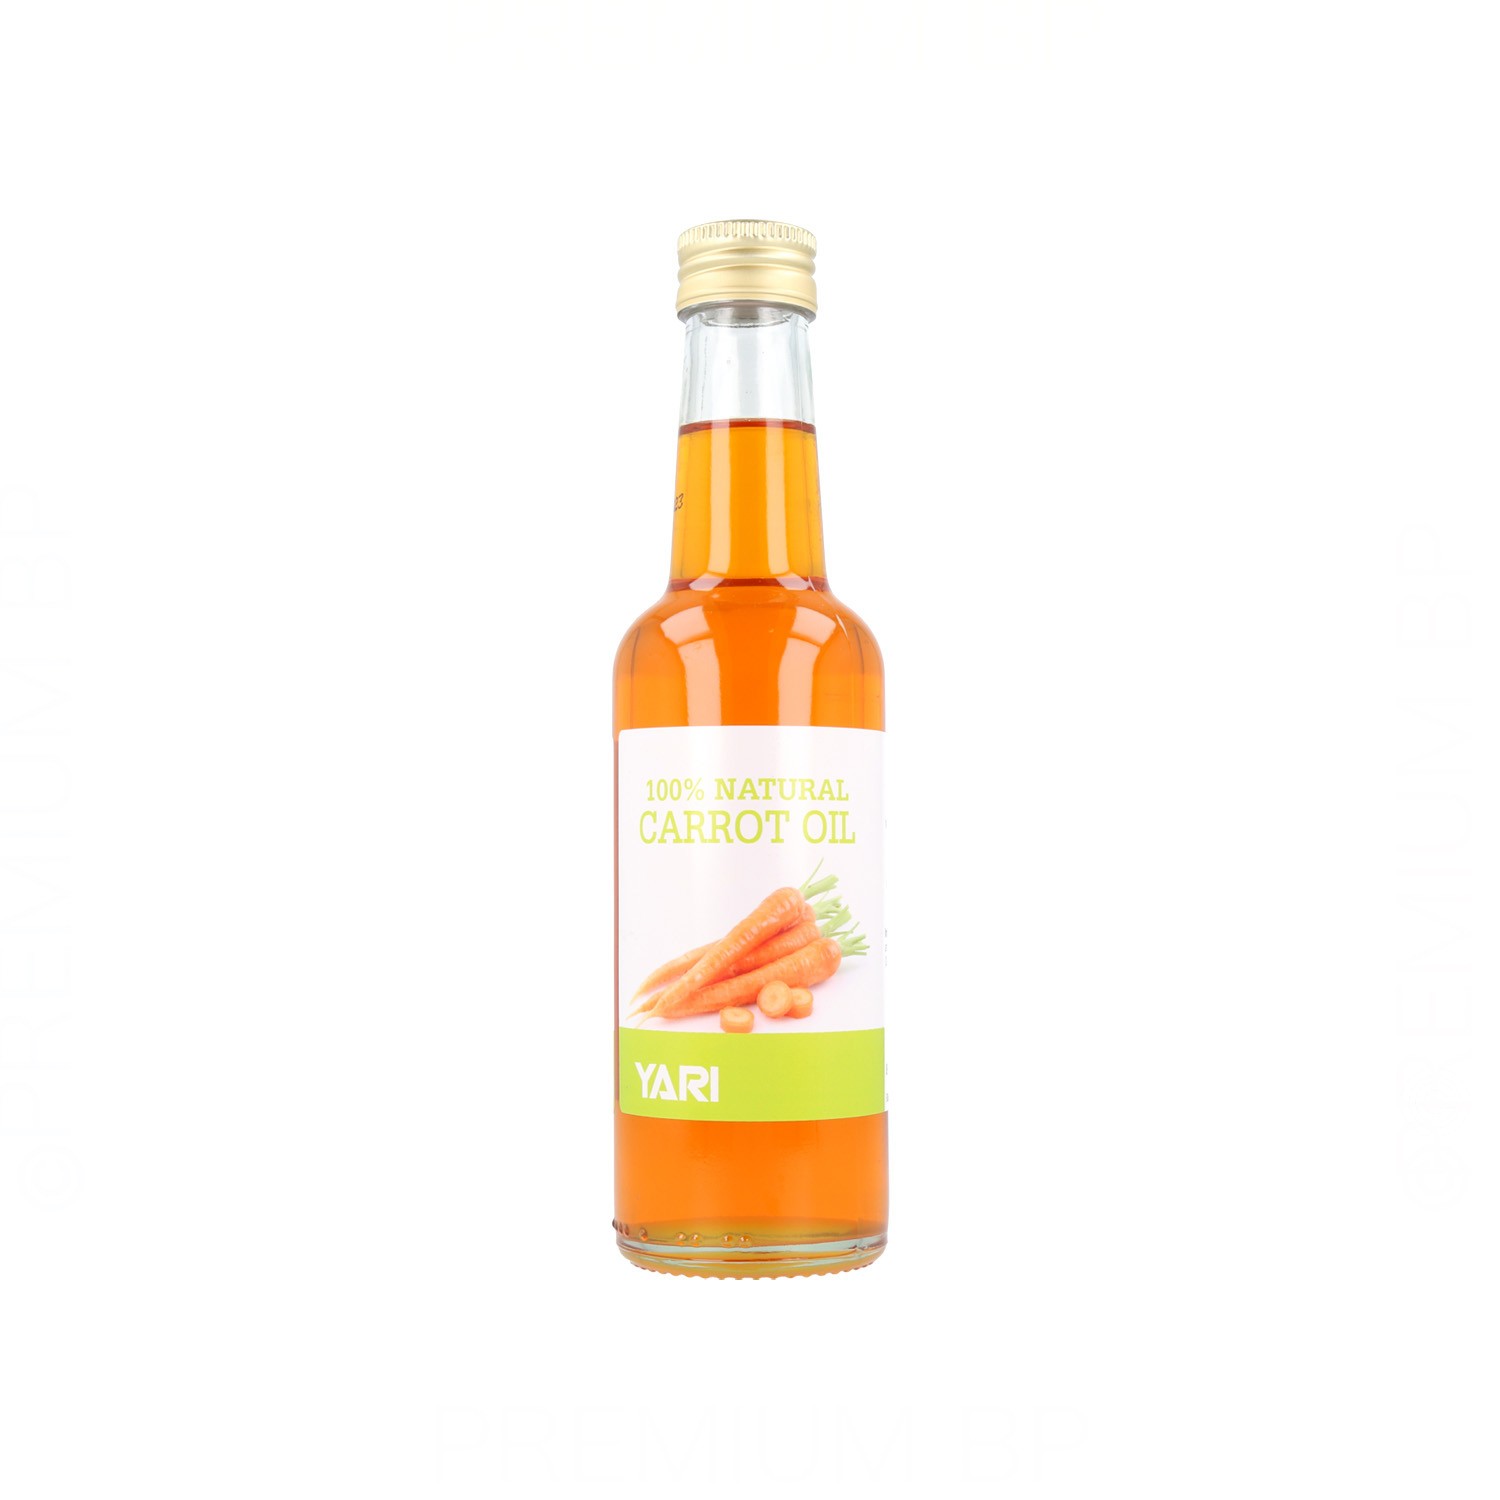 Yari - Yari natural carrot oil 250 ml, aceite natural de zanahoria 100%. Belleza y cuidado de tu cabello y tu piel con Yari.